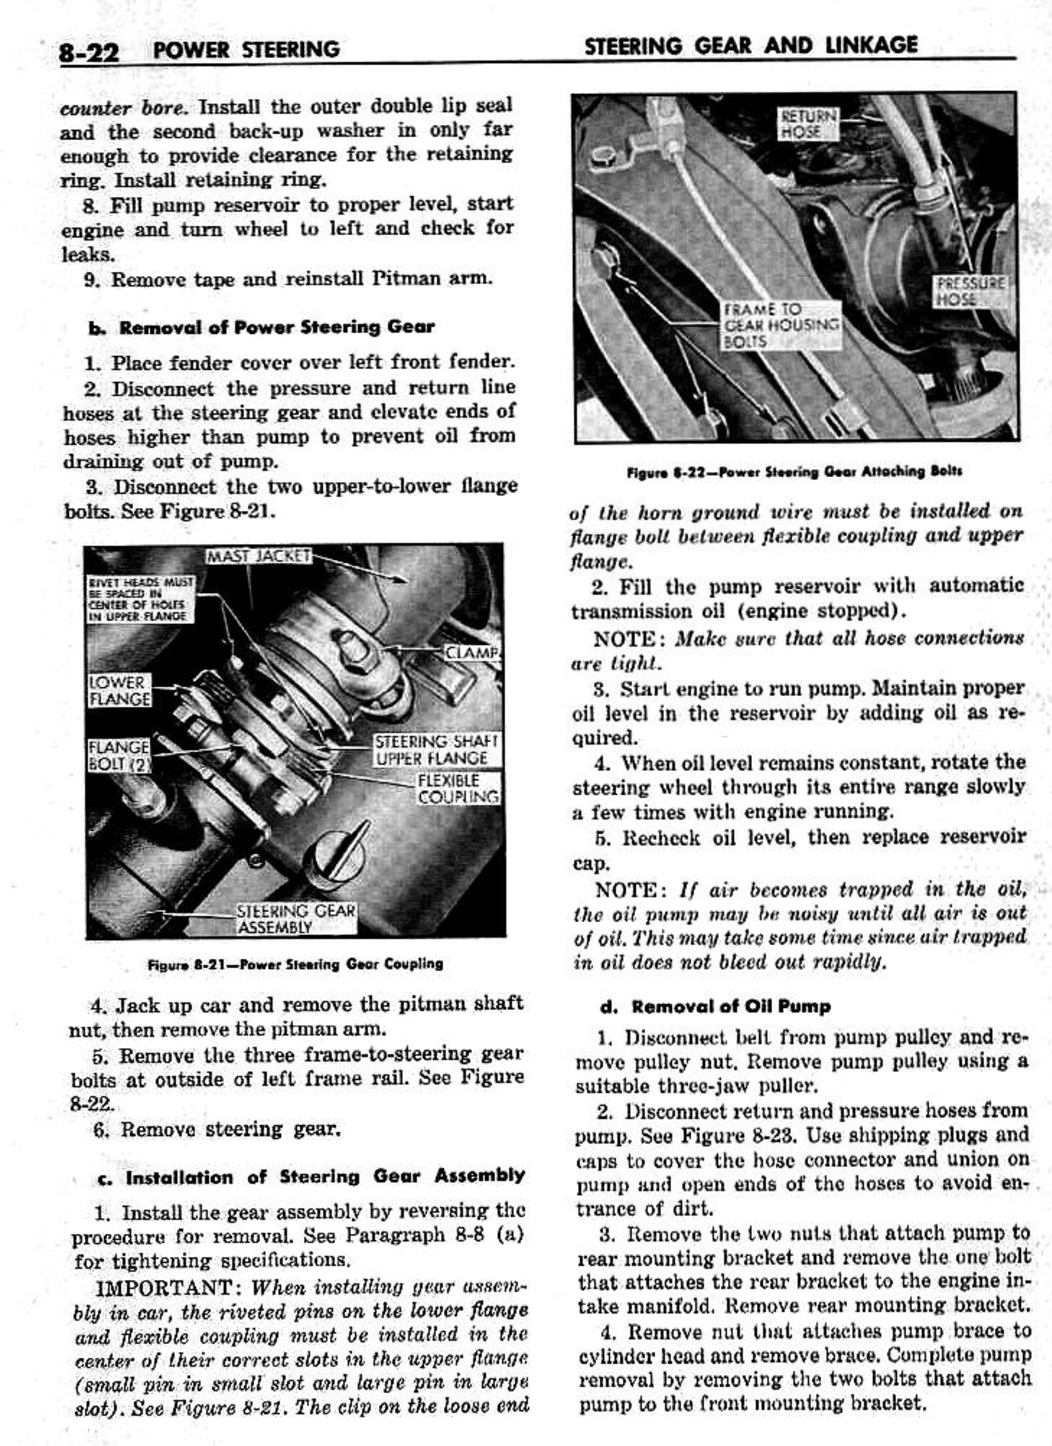 n_09 1959 Buick Shop Manual - Steering-022-022.jpg